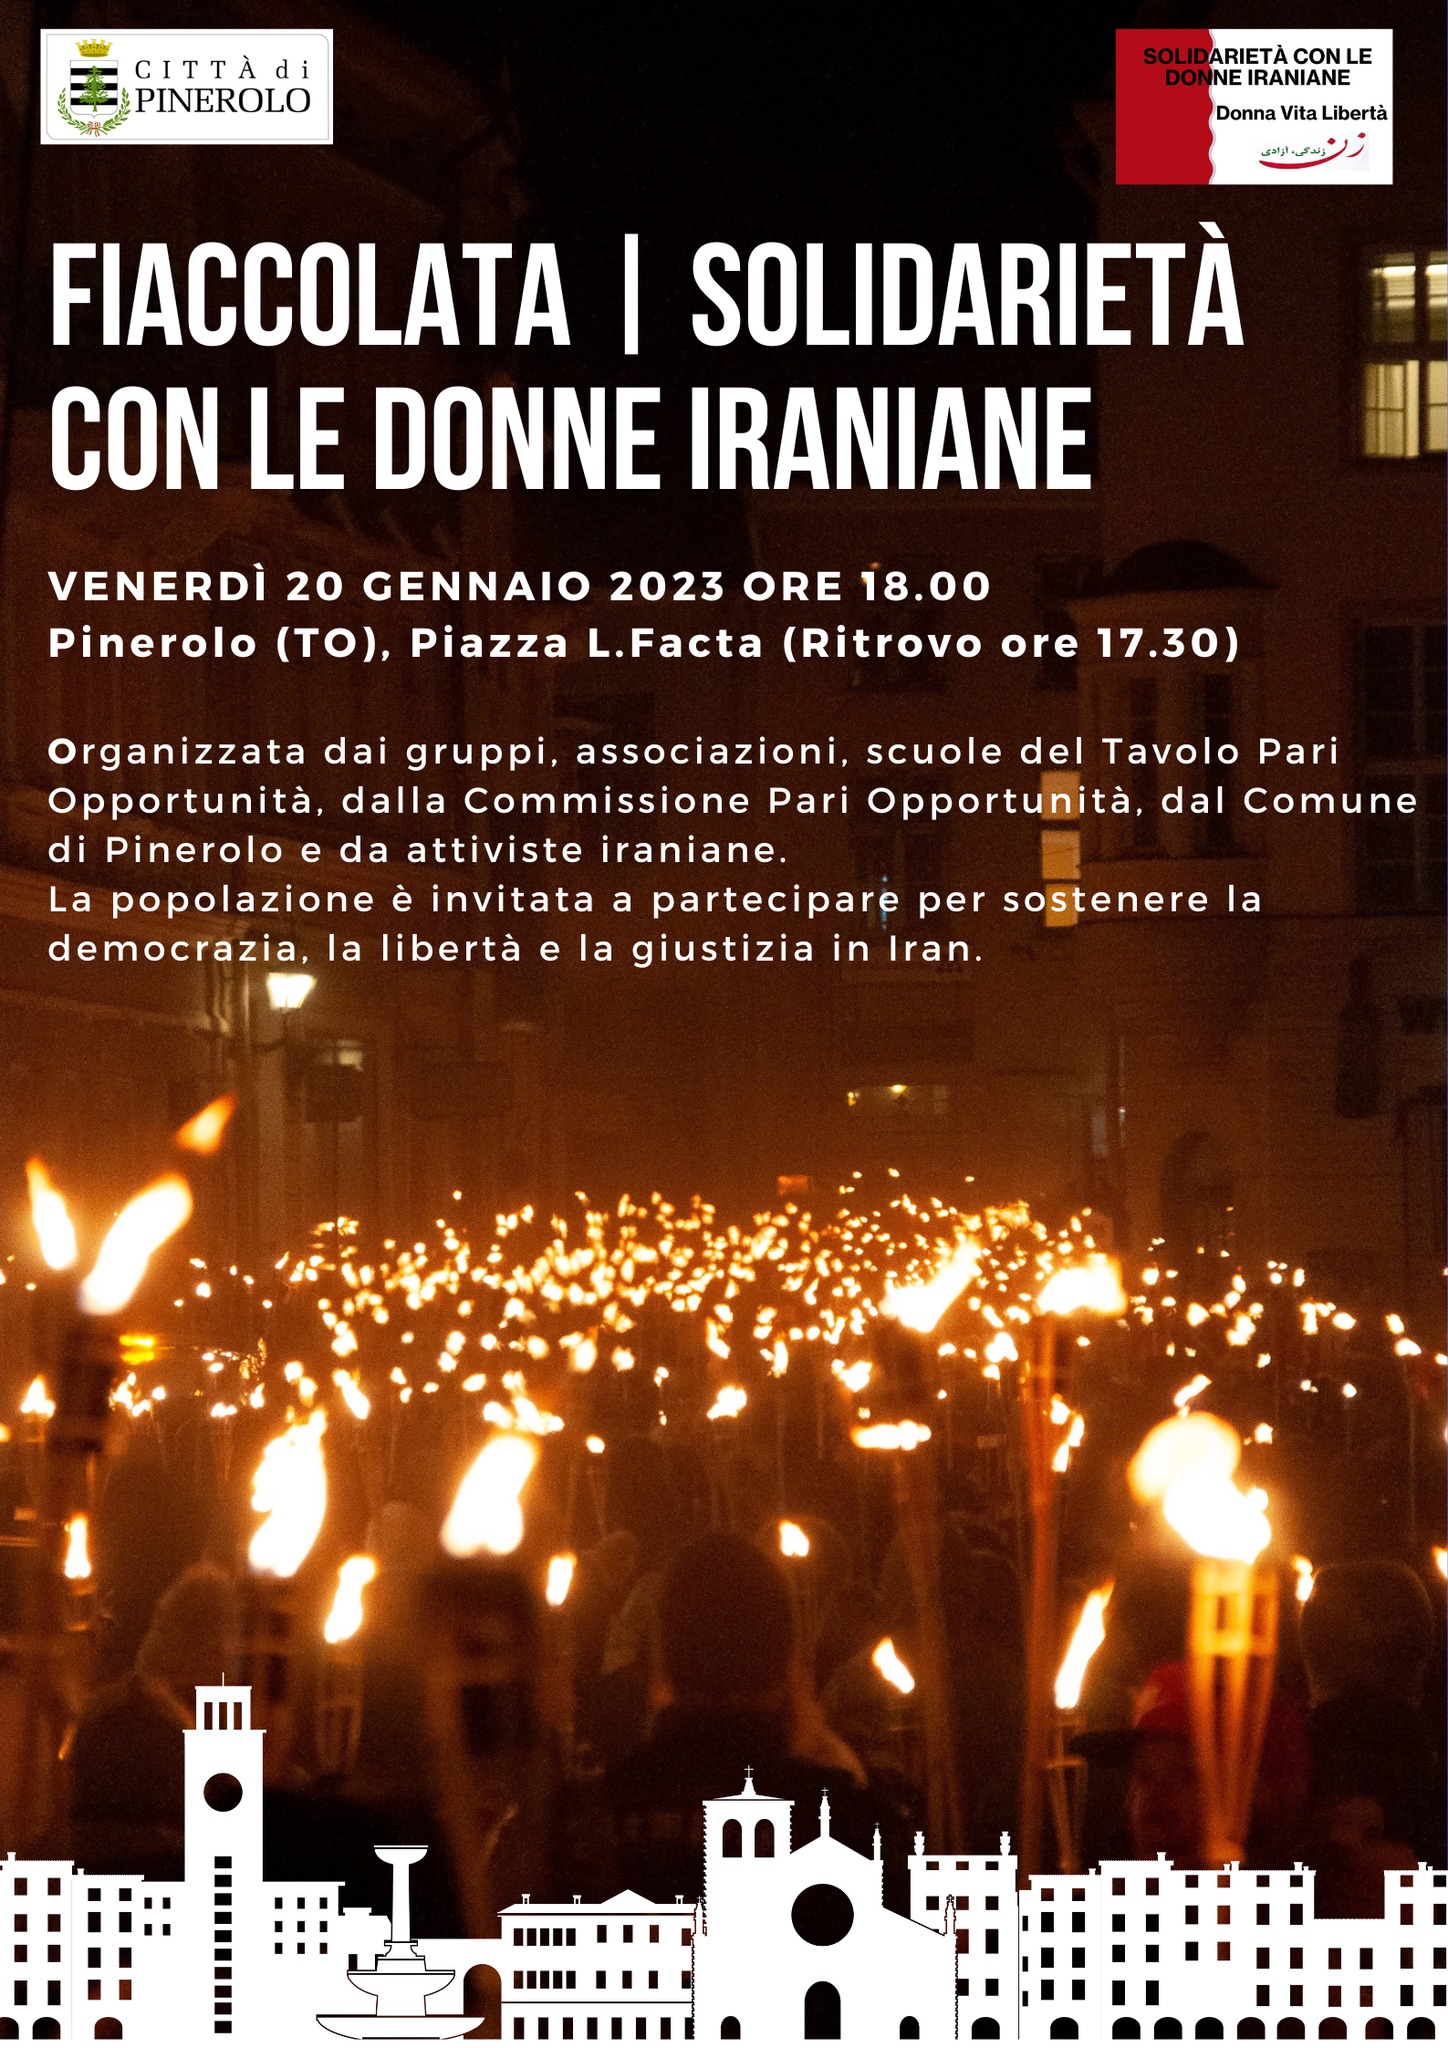 Fiaccolata di solidarietà con le donne iraniane venerdì 20 gennaio 2023